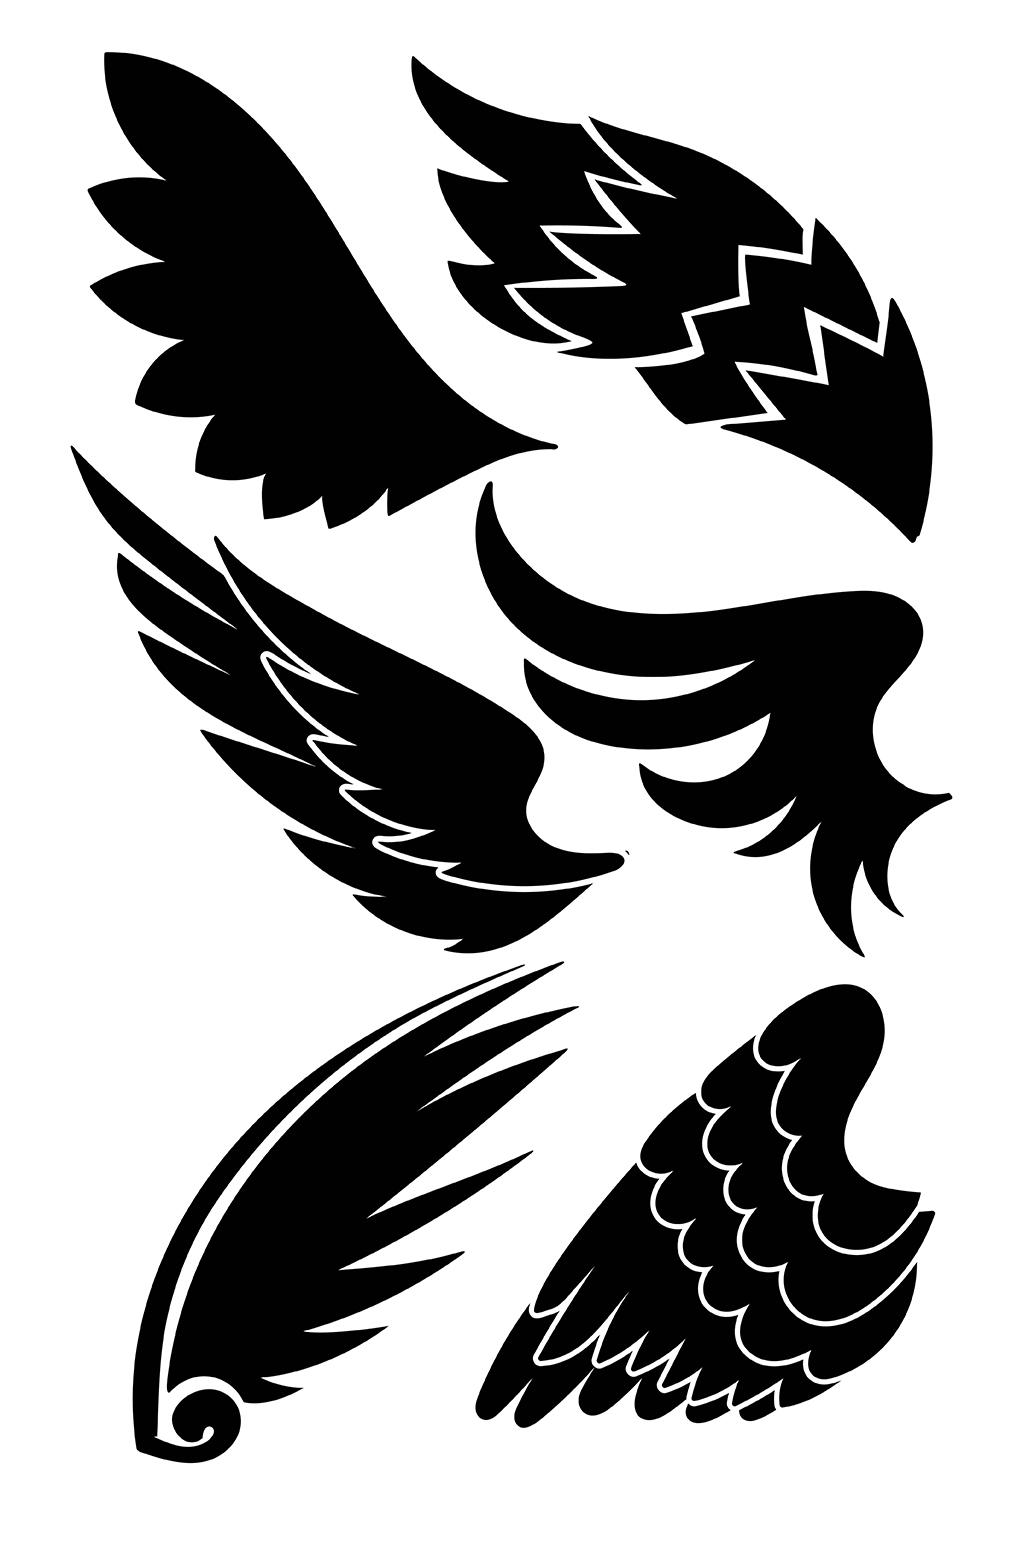 羽毛纹身手稿黑白图片